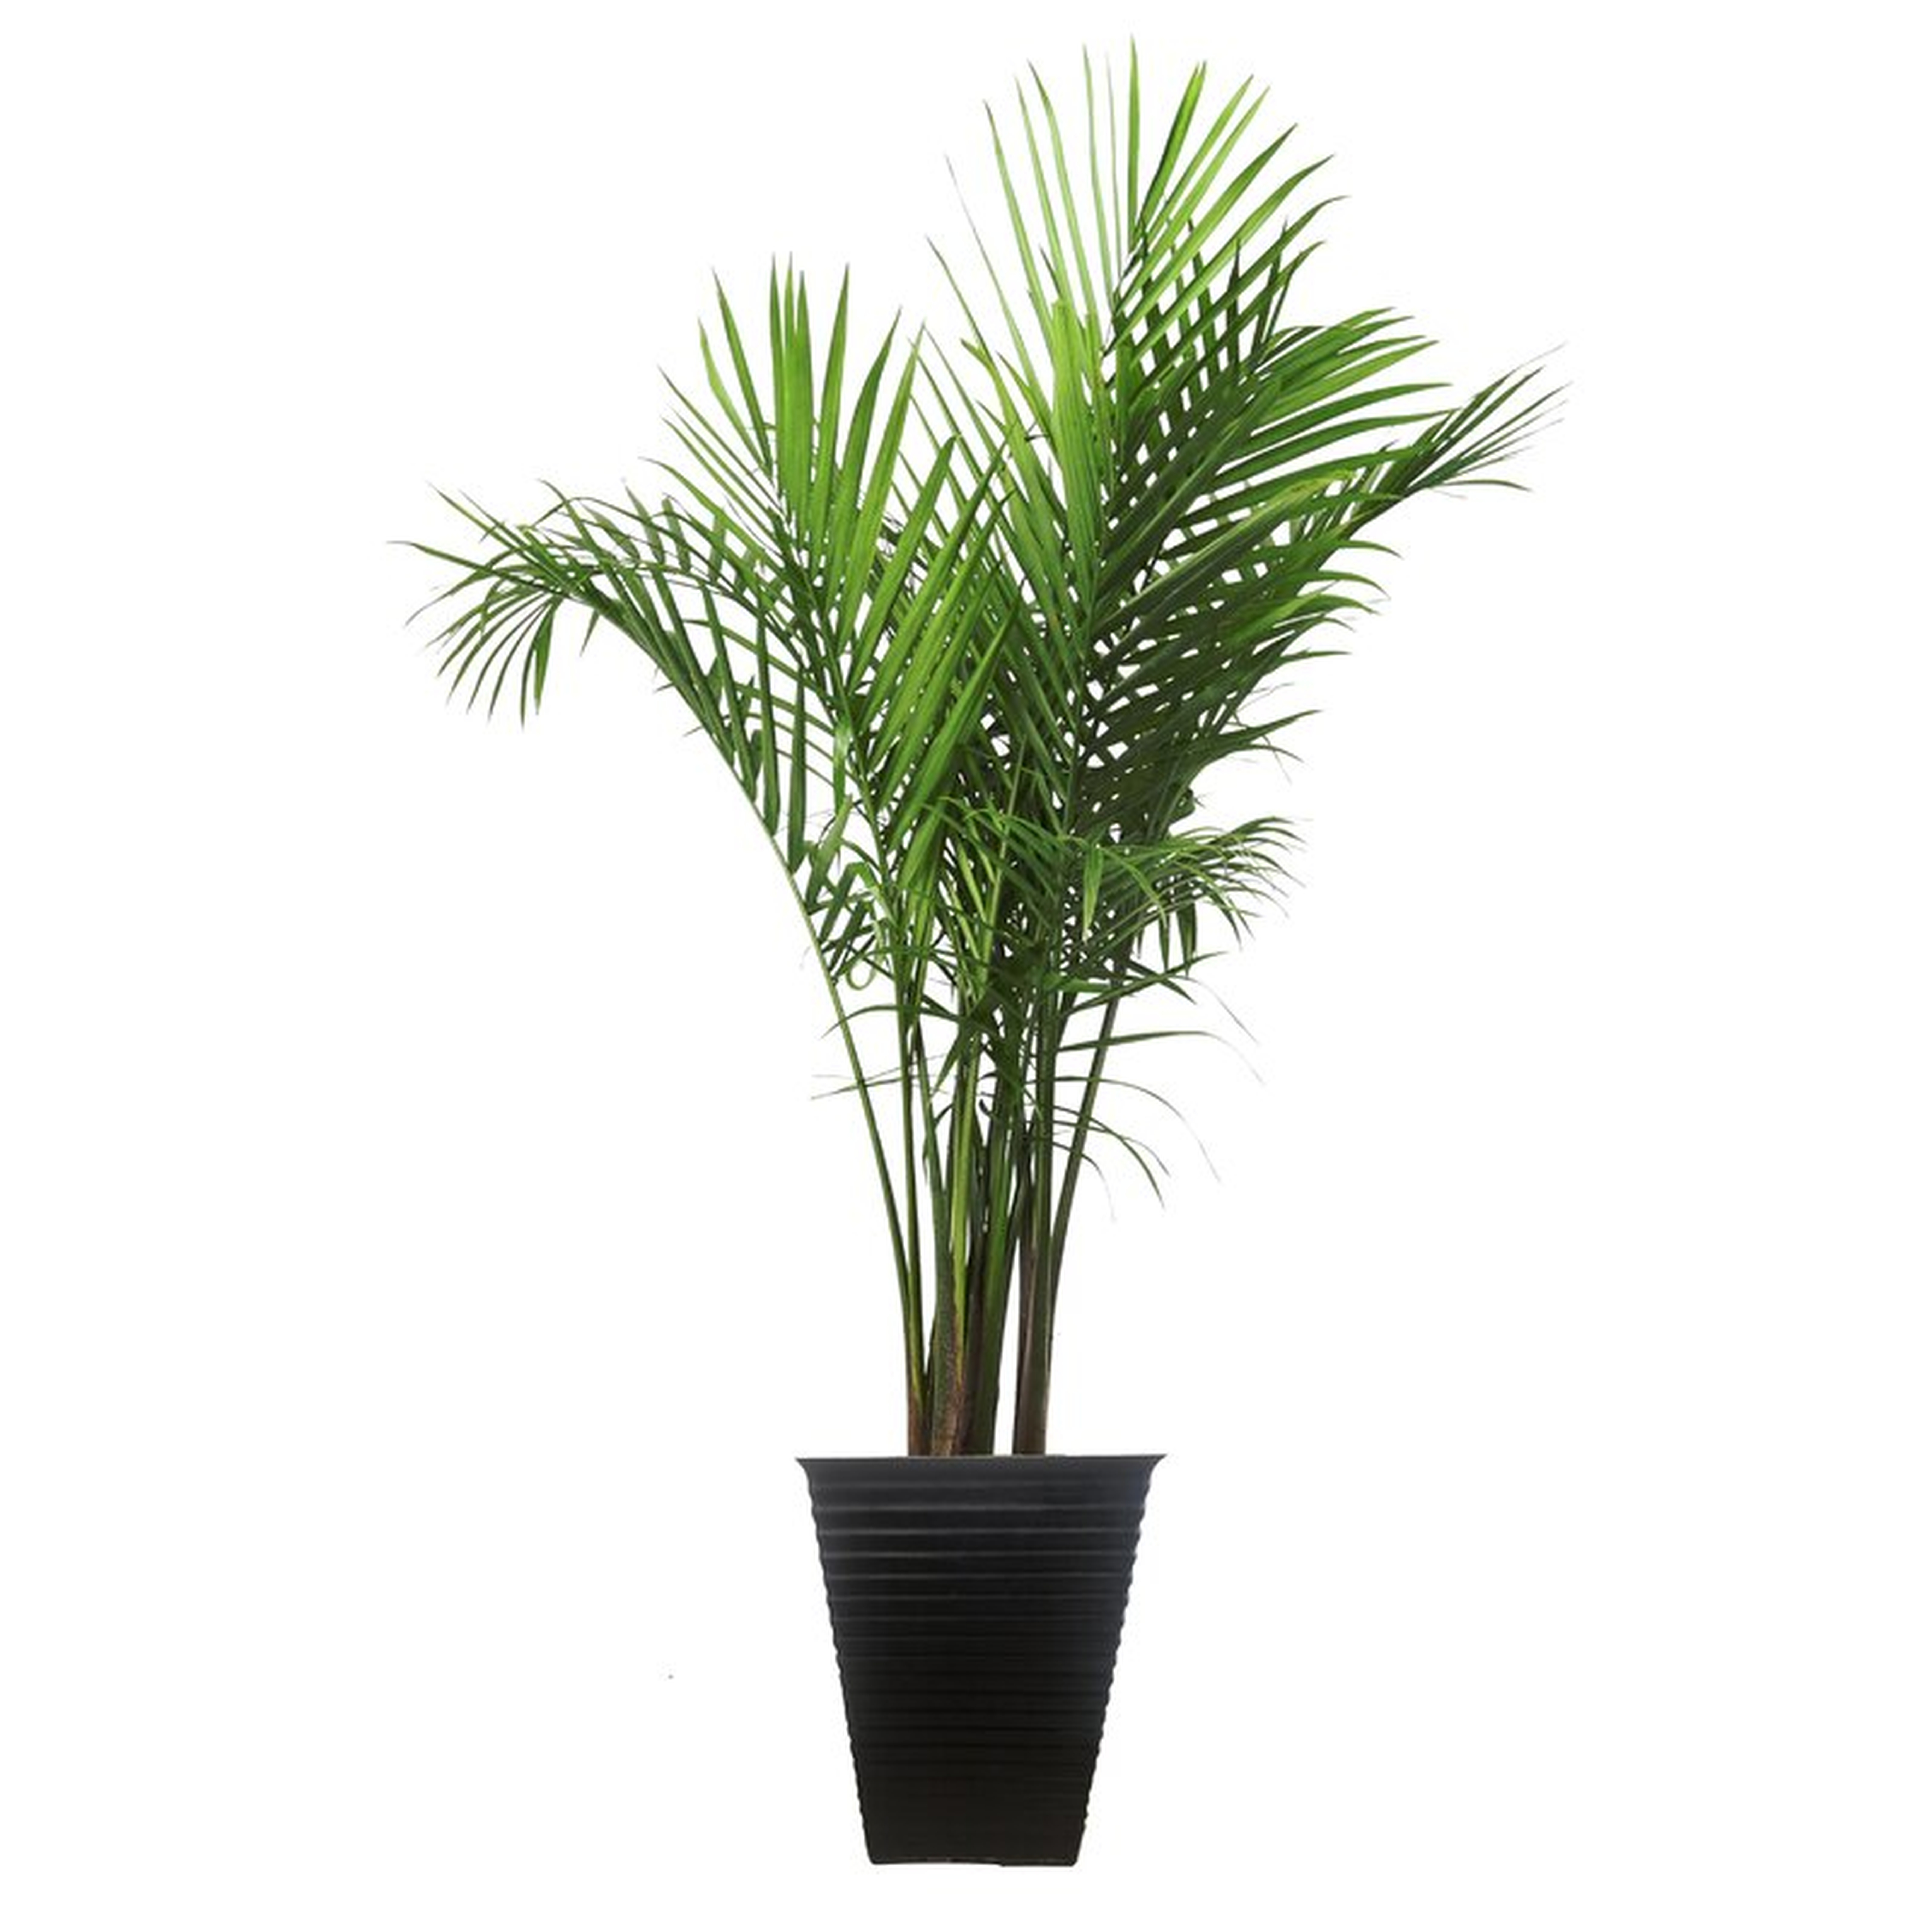 Costa Farms Majesty Palm Tree in Planter - Perigold